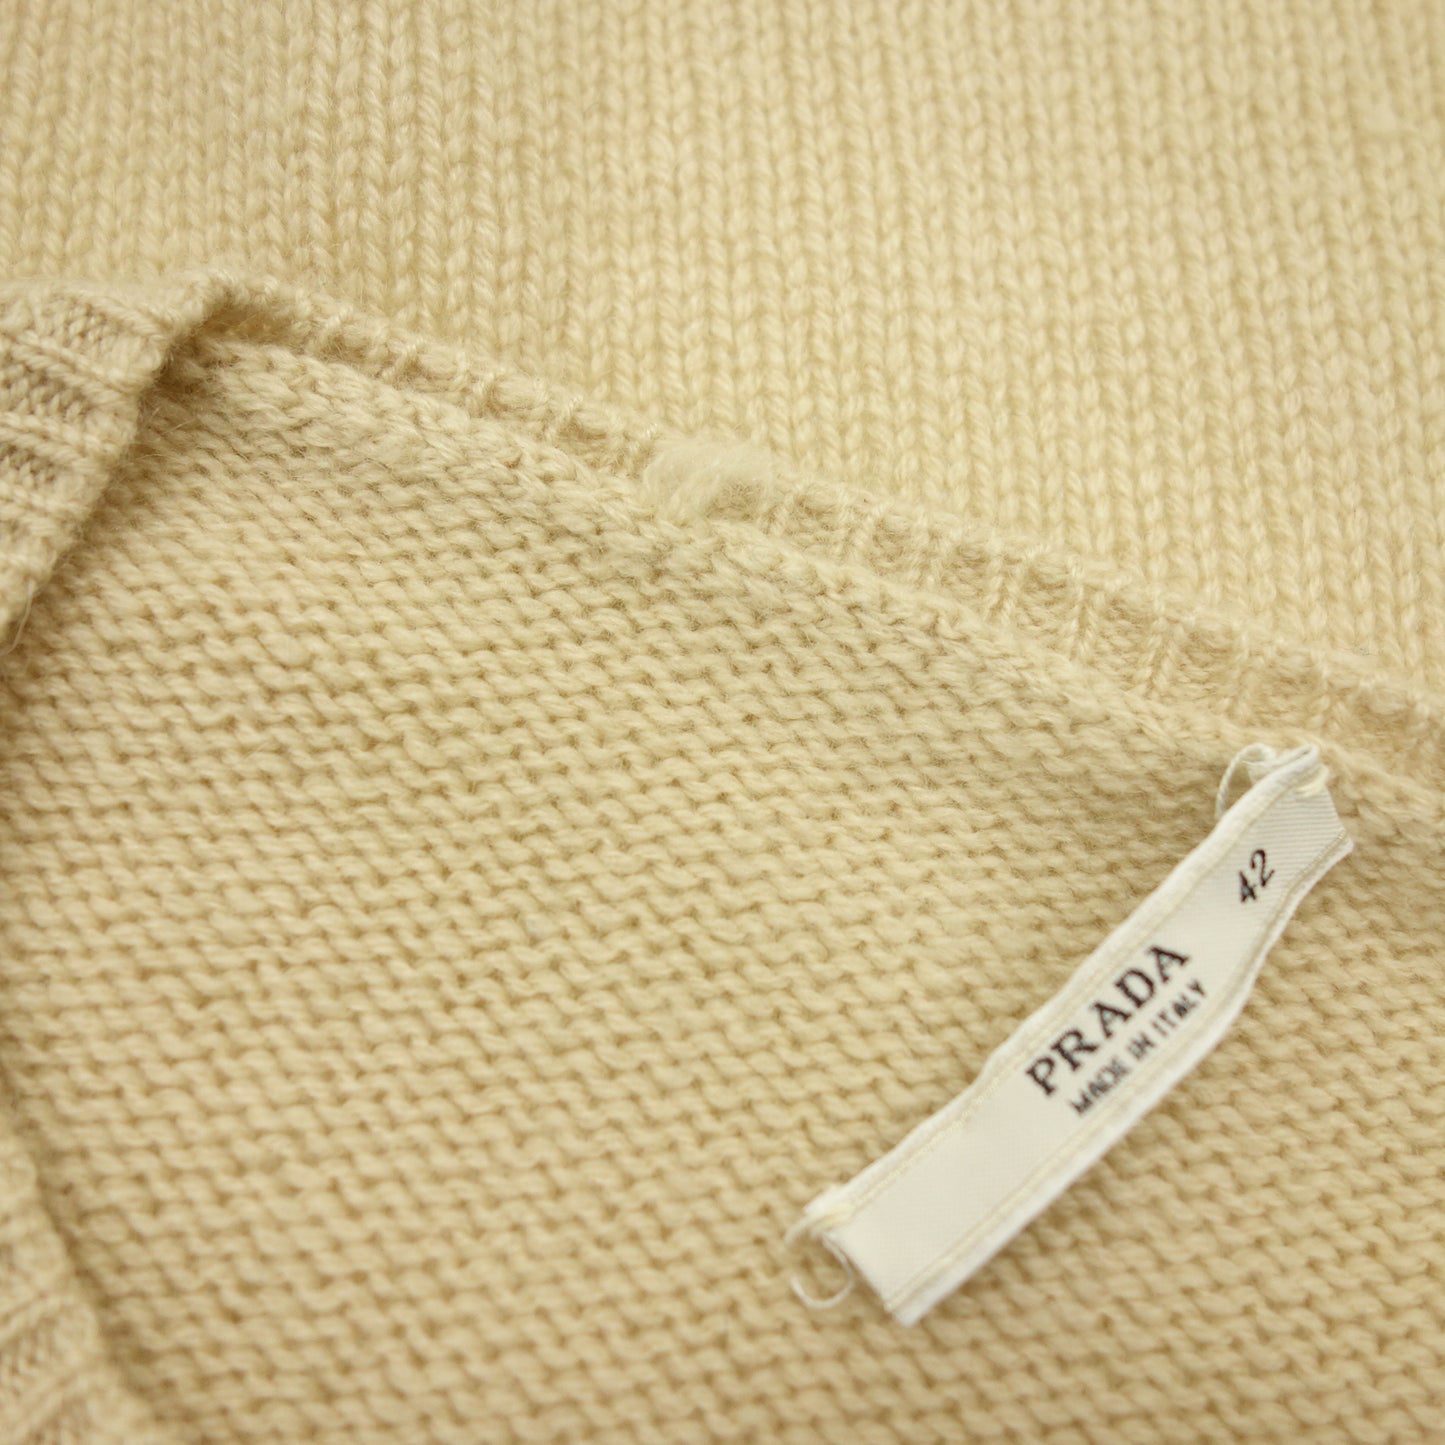 状况良好◆普拉达针织毛衣羊绒 100 女式米色 42 码 PRADA [AFB41] 